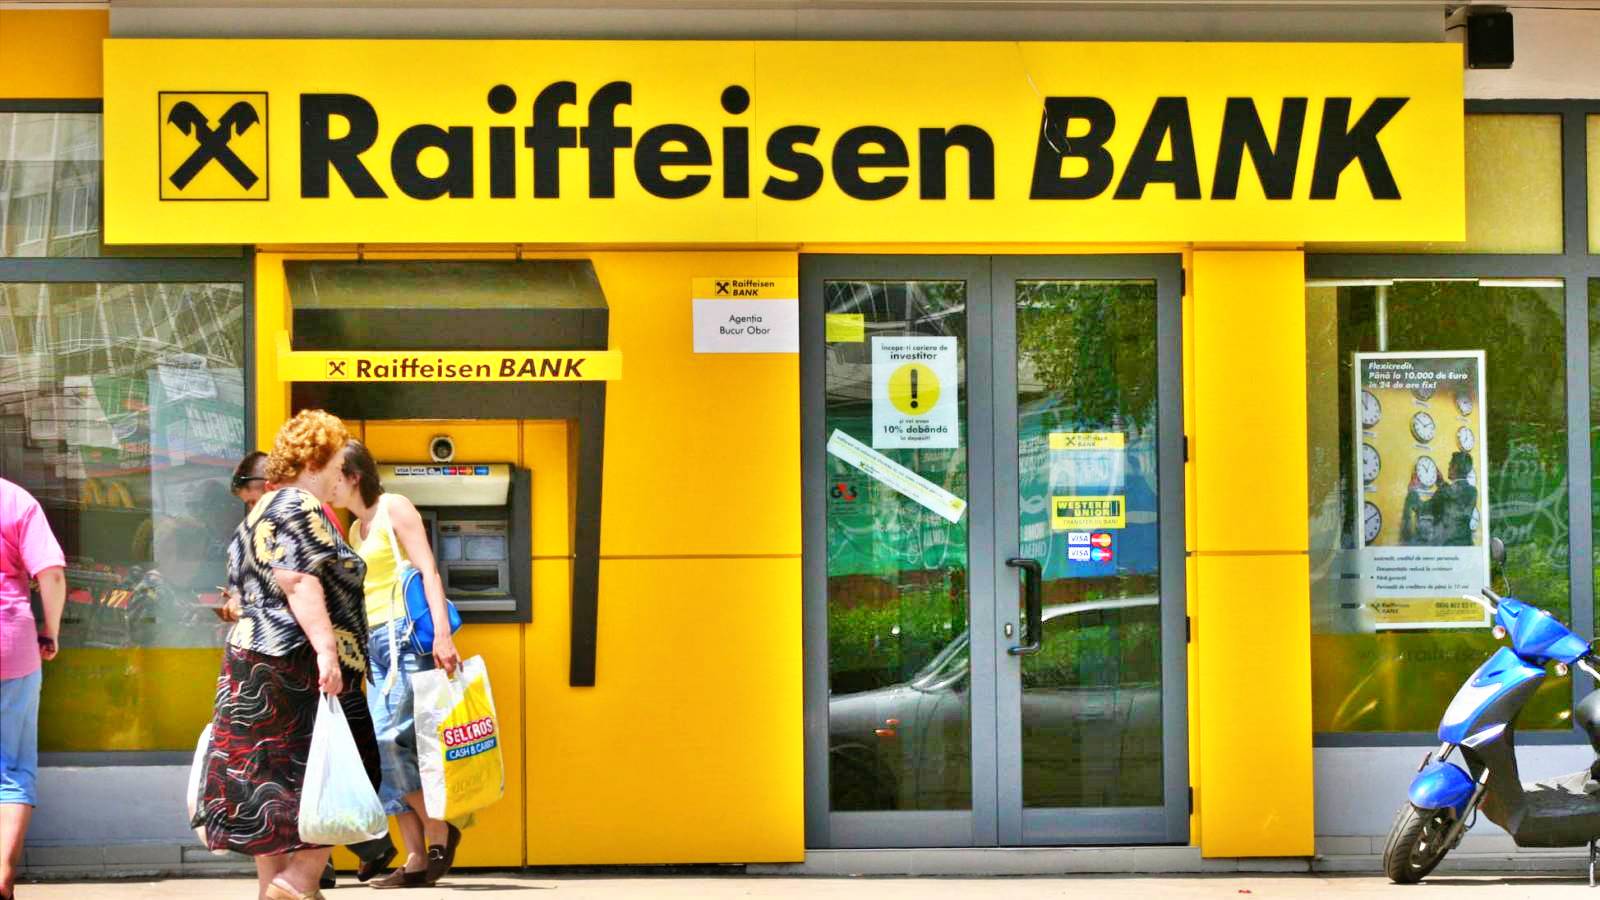 Raiffeisen Bank WAŻNA informacja dla WSZYSTKICH Rumunów w całym kraju